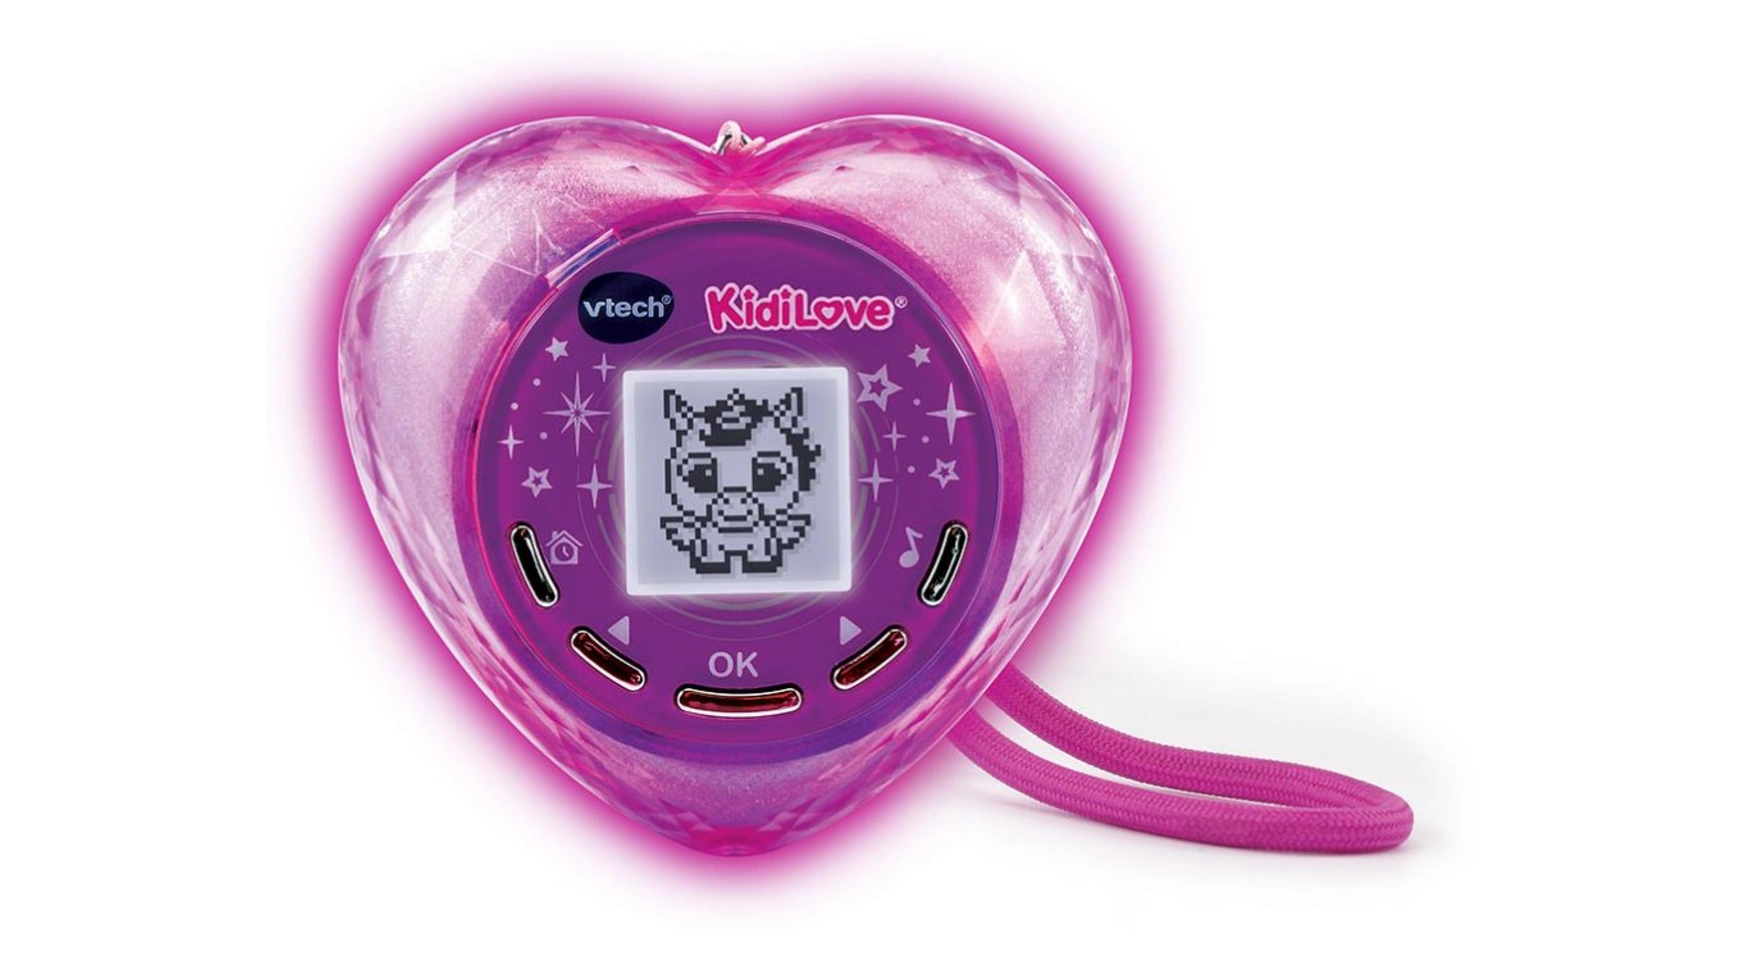 vtech kiditronics мои первые kidiwatch розовые VTech Kiditronics KidiLove, интерактивное игровое устройство с подсветкой